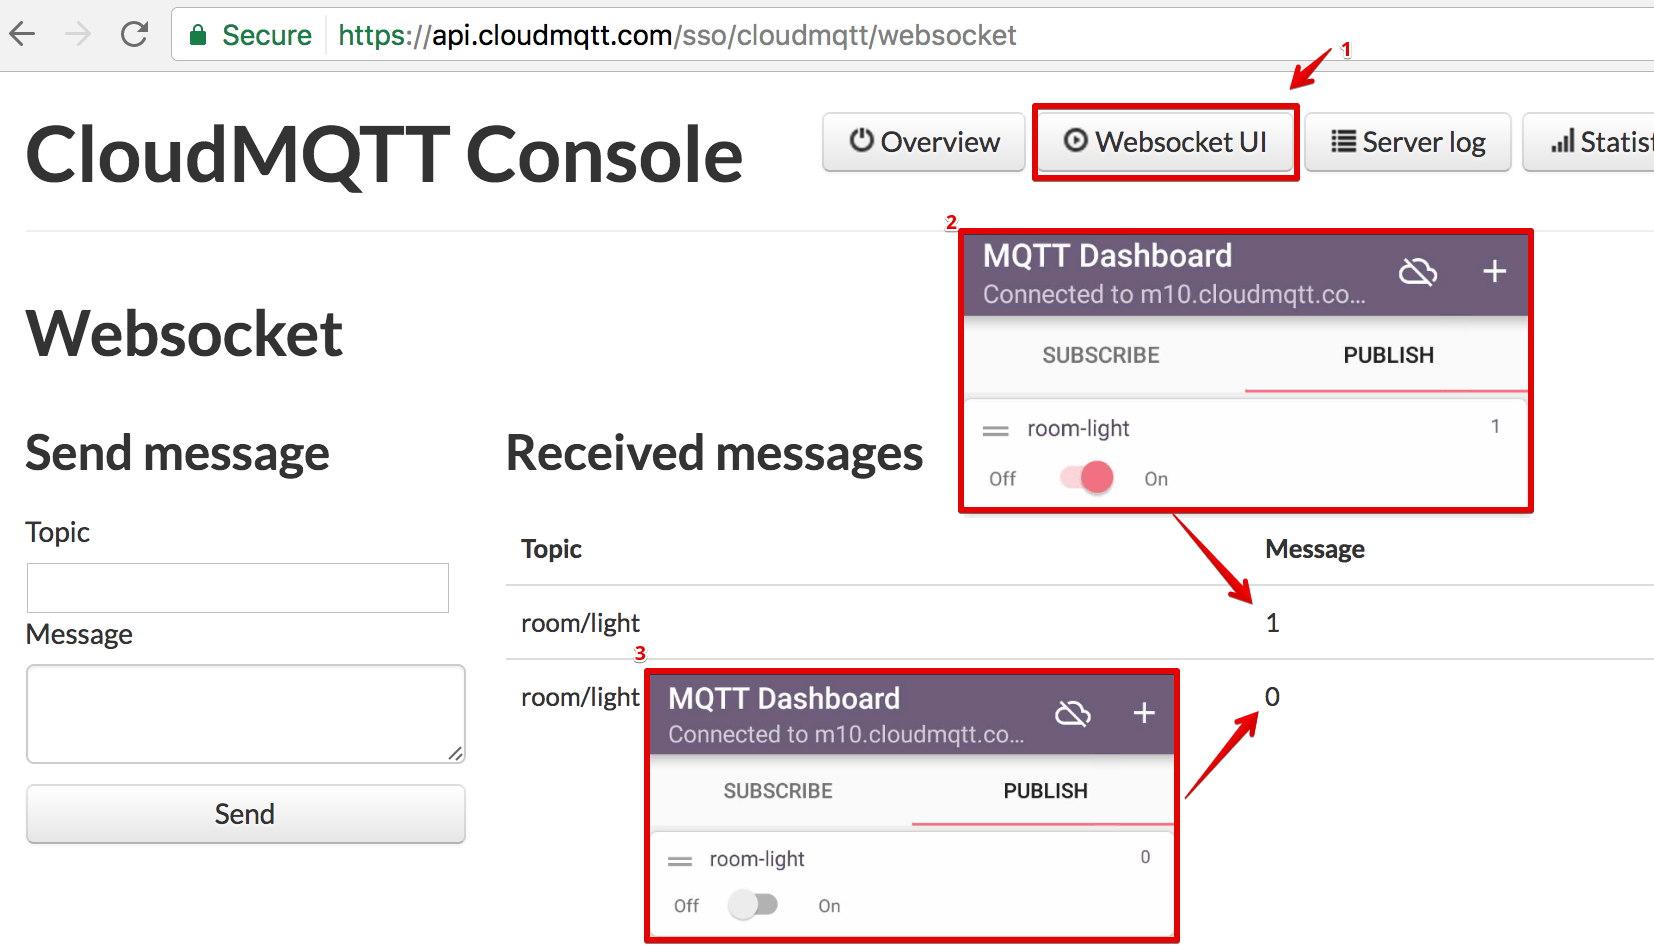 IoT MQTT Dashboard - CloudMQTT Console - Websocket UI